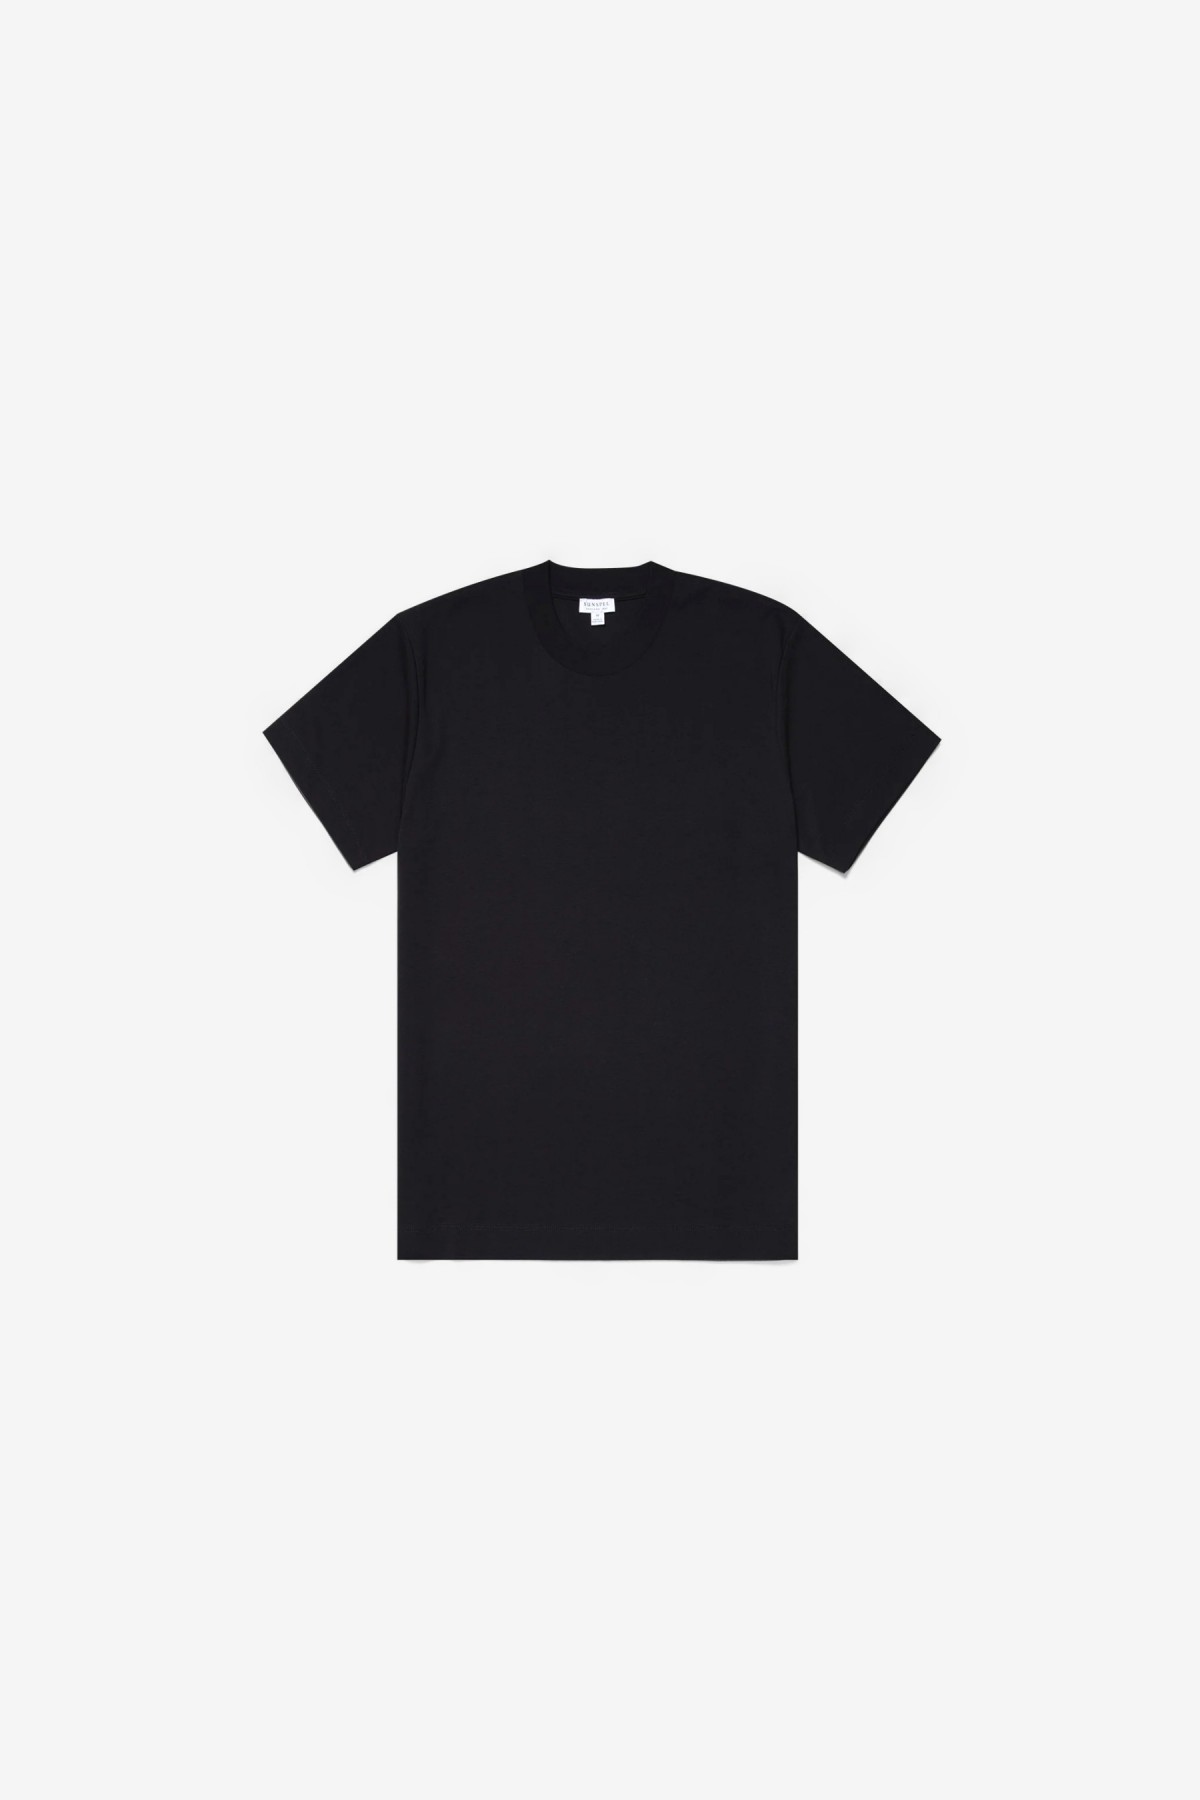 Sunspel SS Heavyweight T-Shirt in Black